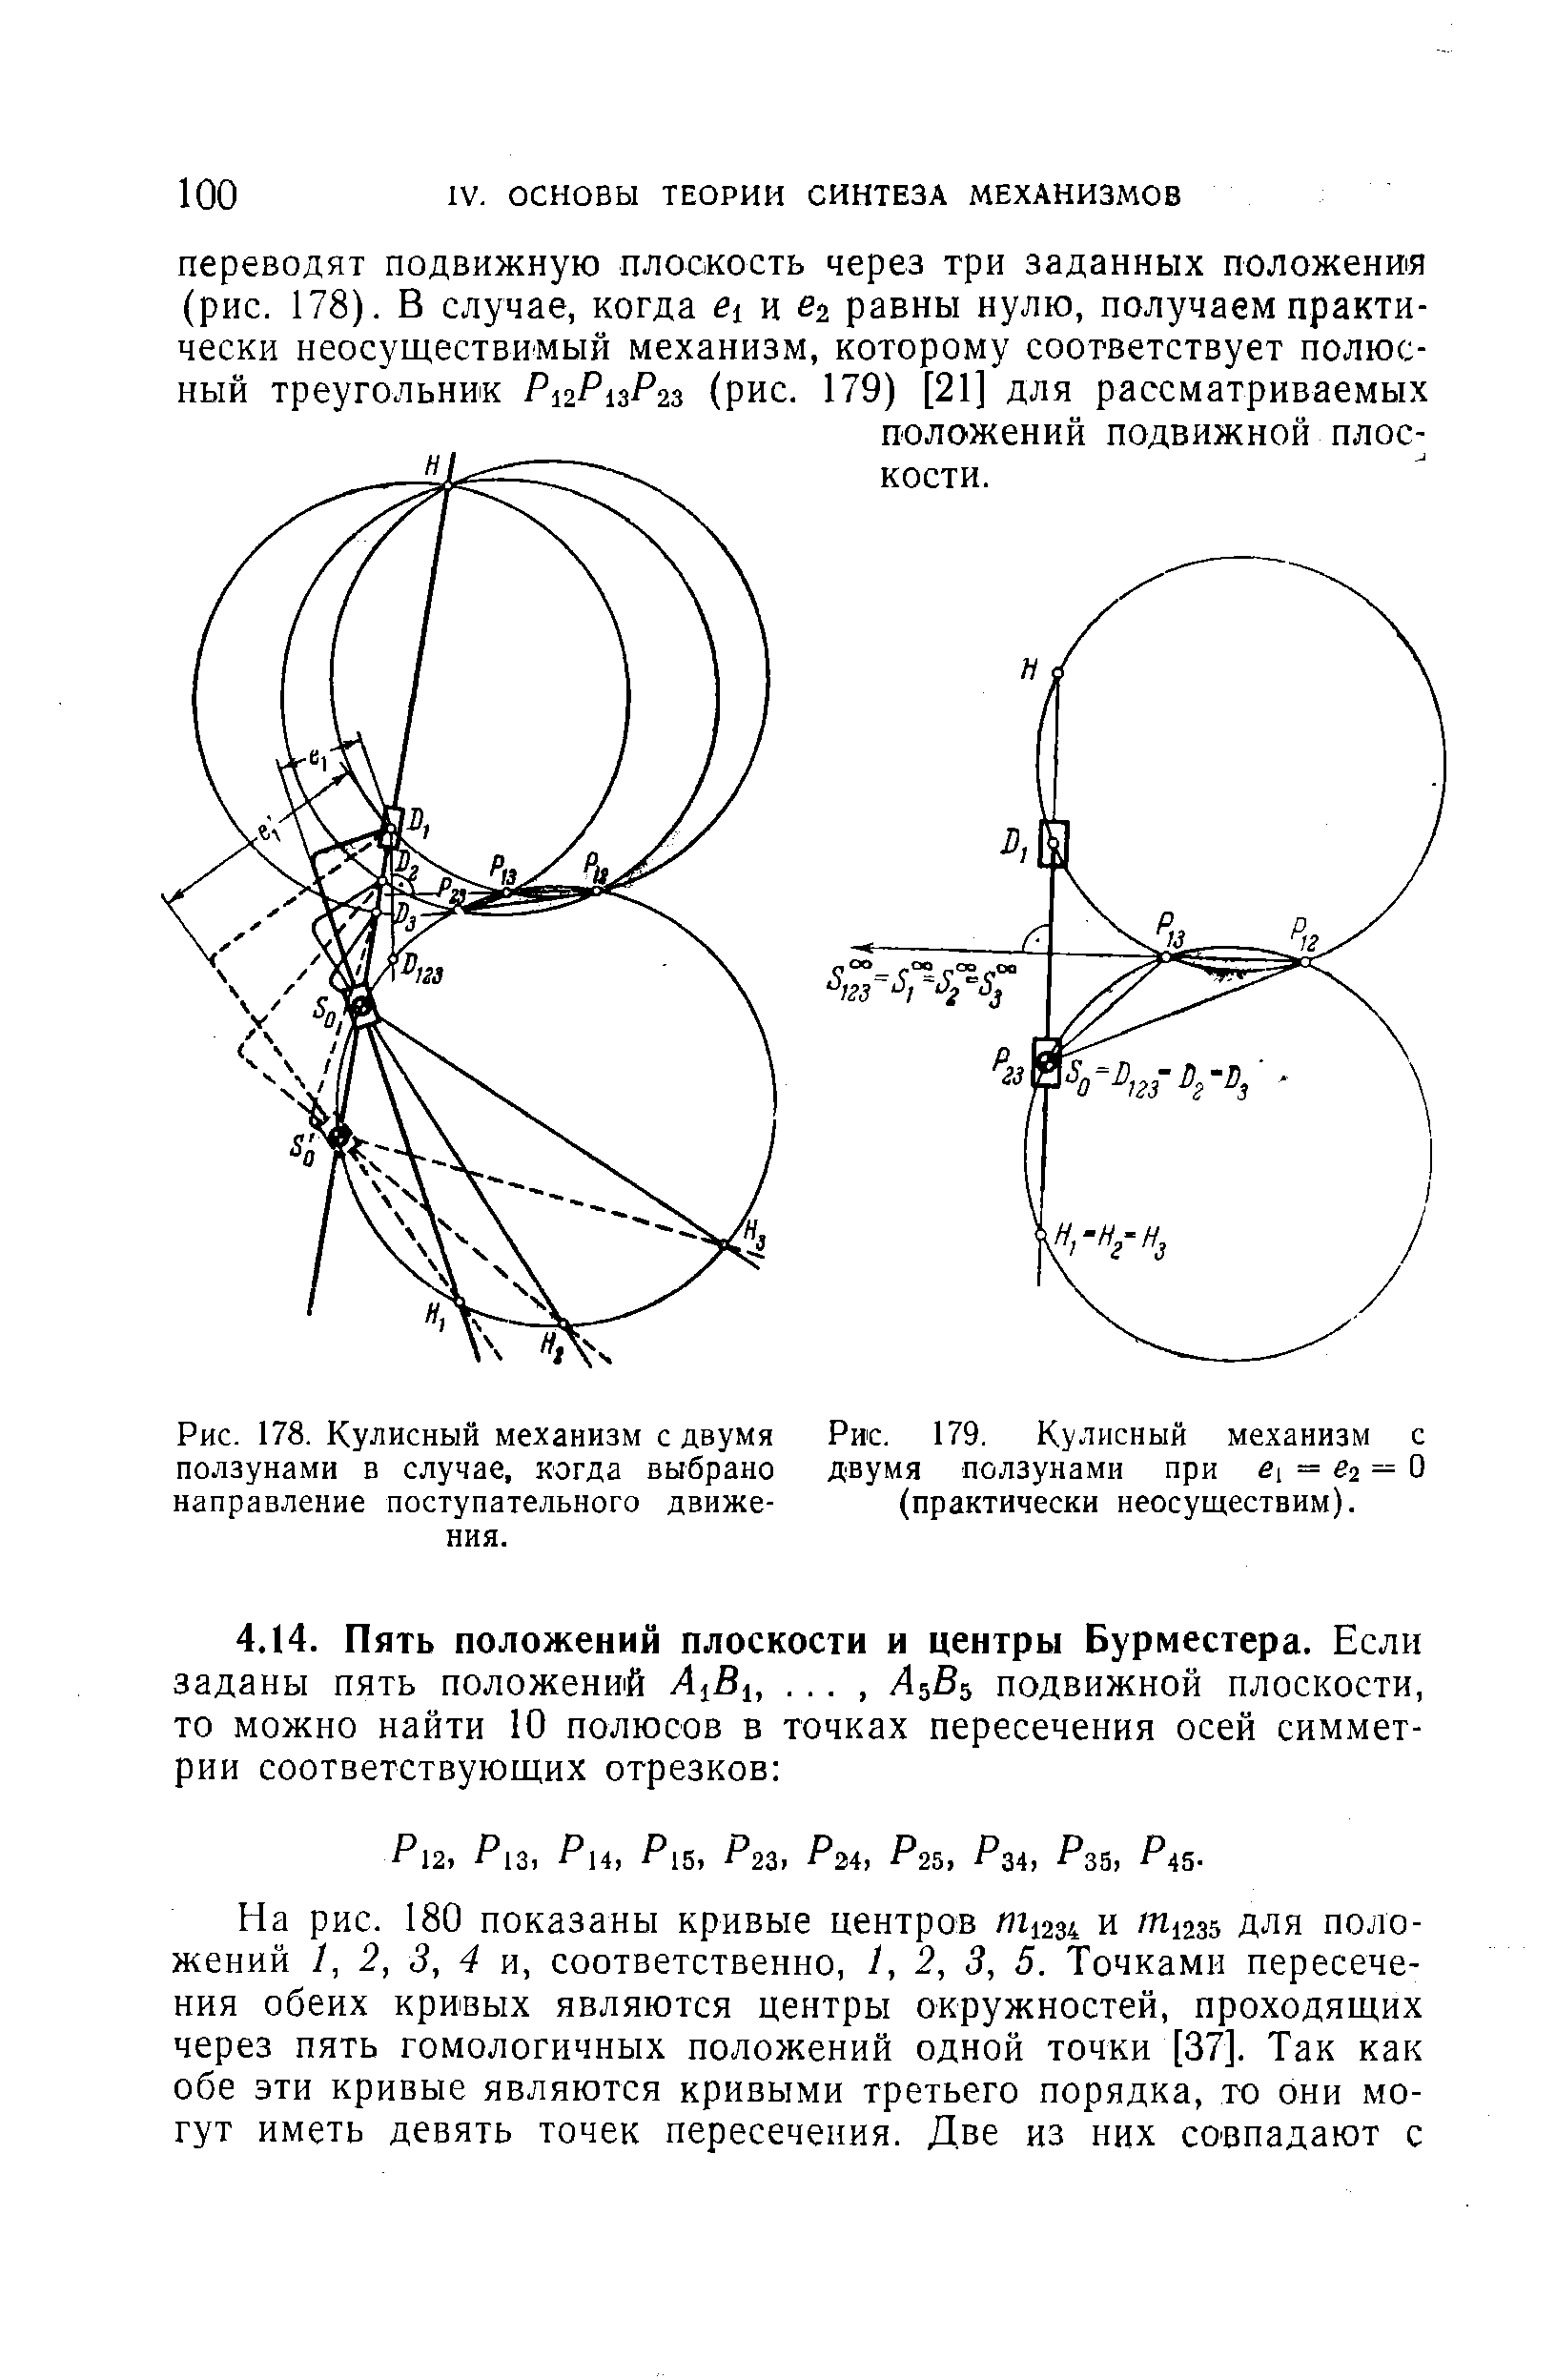 Рис. 178. Кулисный механизм с двумя ползунами в случае, когда выбрано направление поступательного движения.
